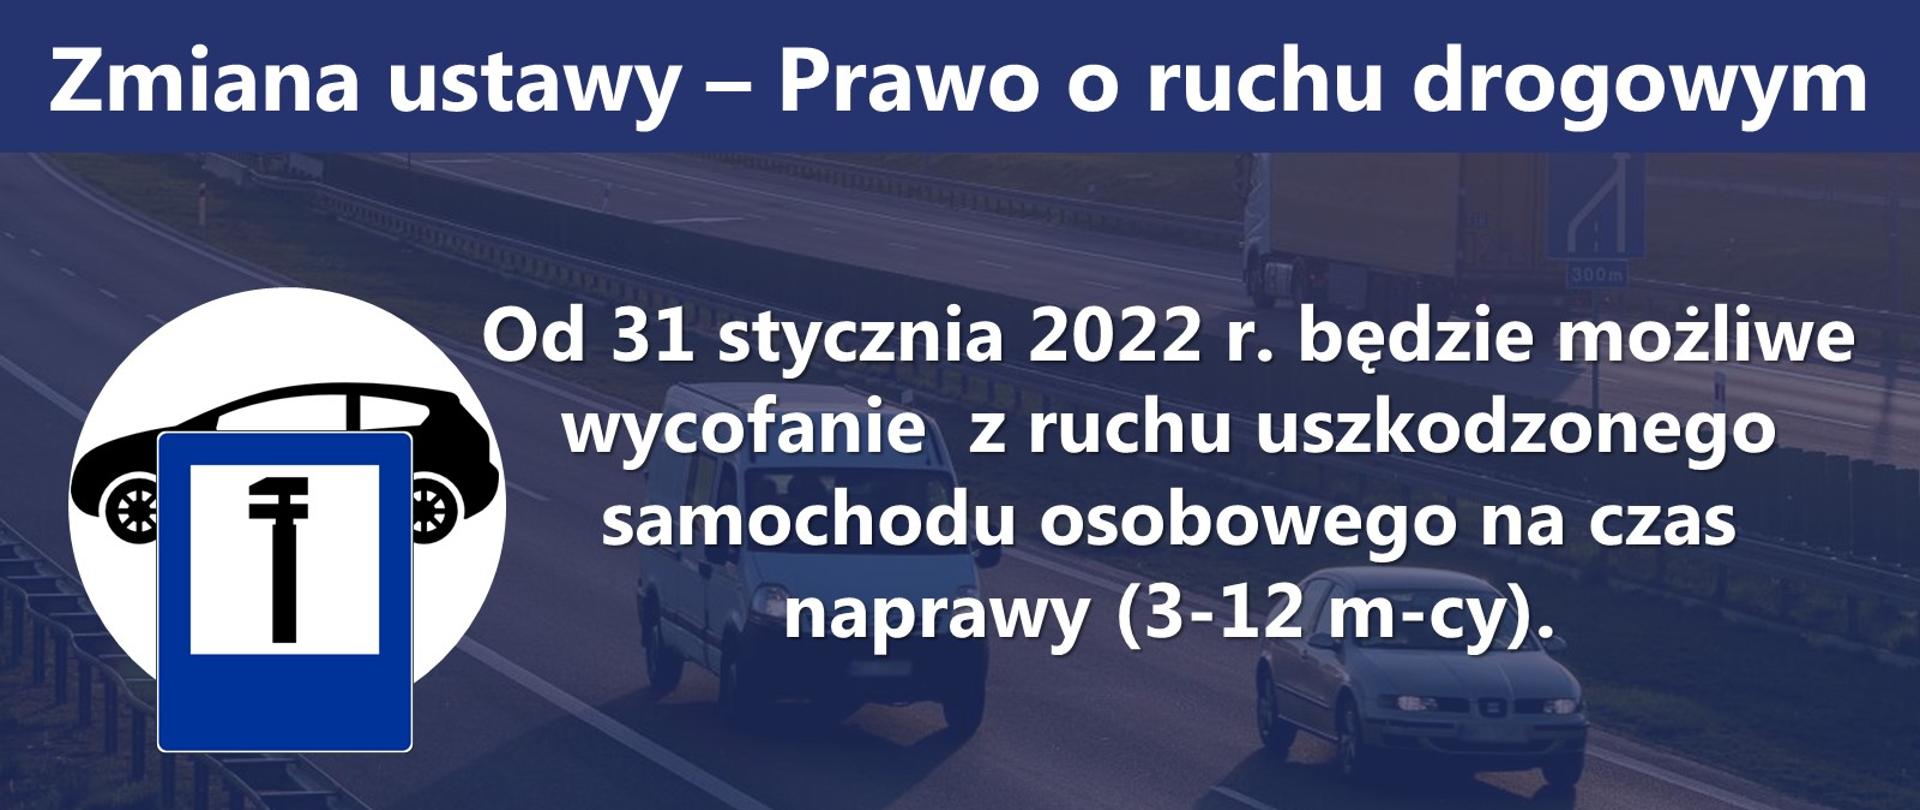 Zmiana ustawy - Prawo o ruchu drogowym. Od 31 stycznia 2022 będzie możliwe wycofanie z ruchu uszkodzonego samochodu osobowego na czas naprawy (3-12 miesięcy). Ministerstwo Infrastruktury #ŁączymyPolskę